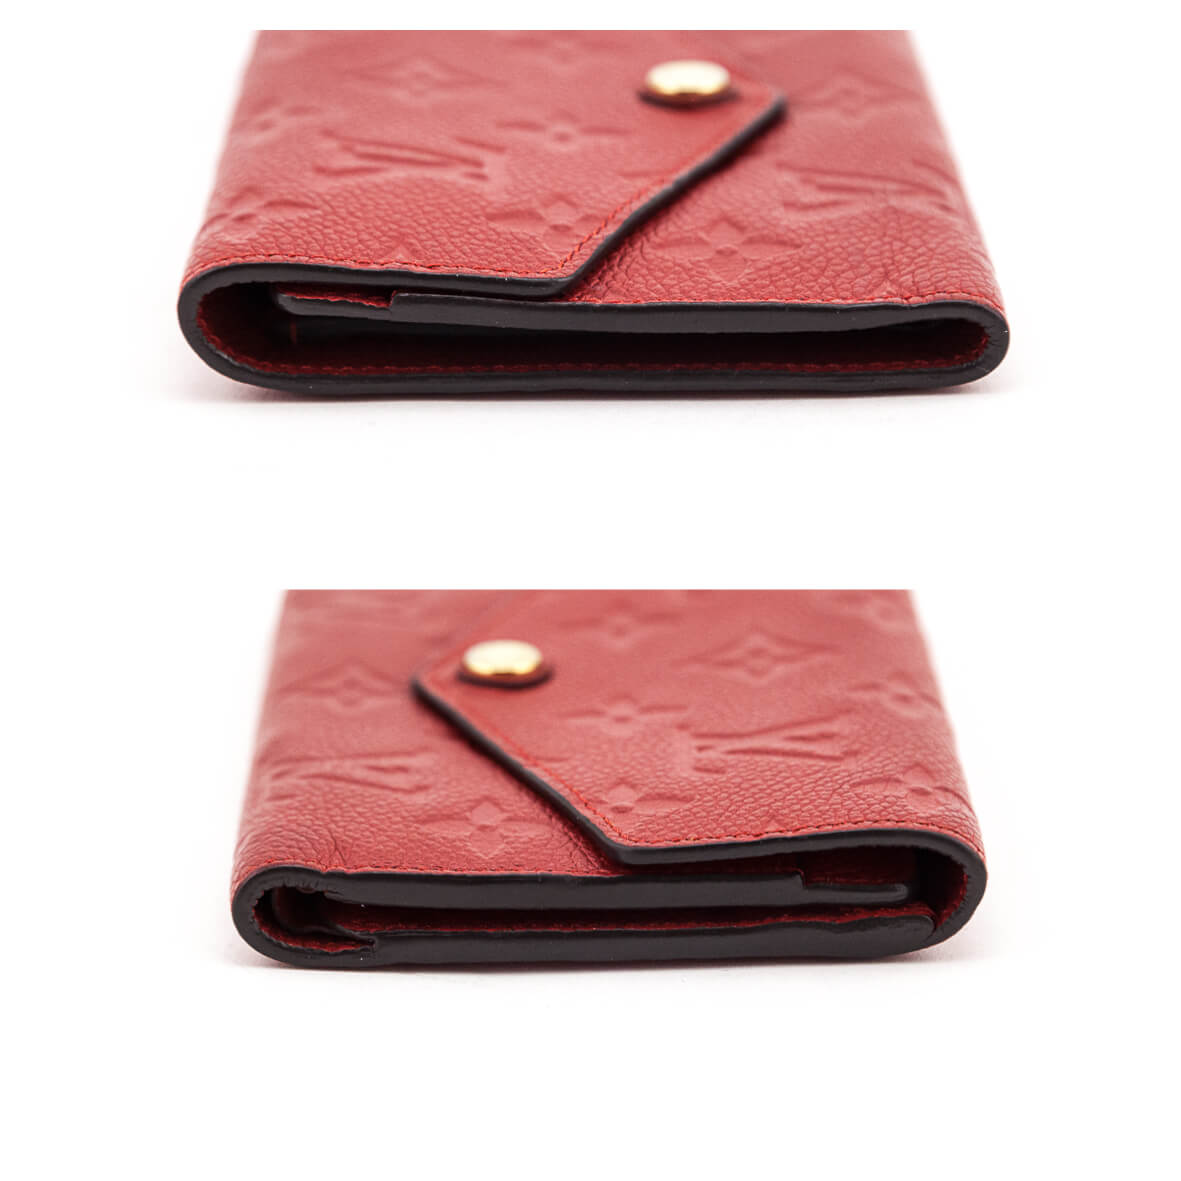 Louis Vuitton Monogram Empreinte Leather Curieuse Wallet Fuchsia